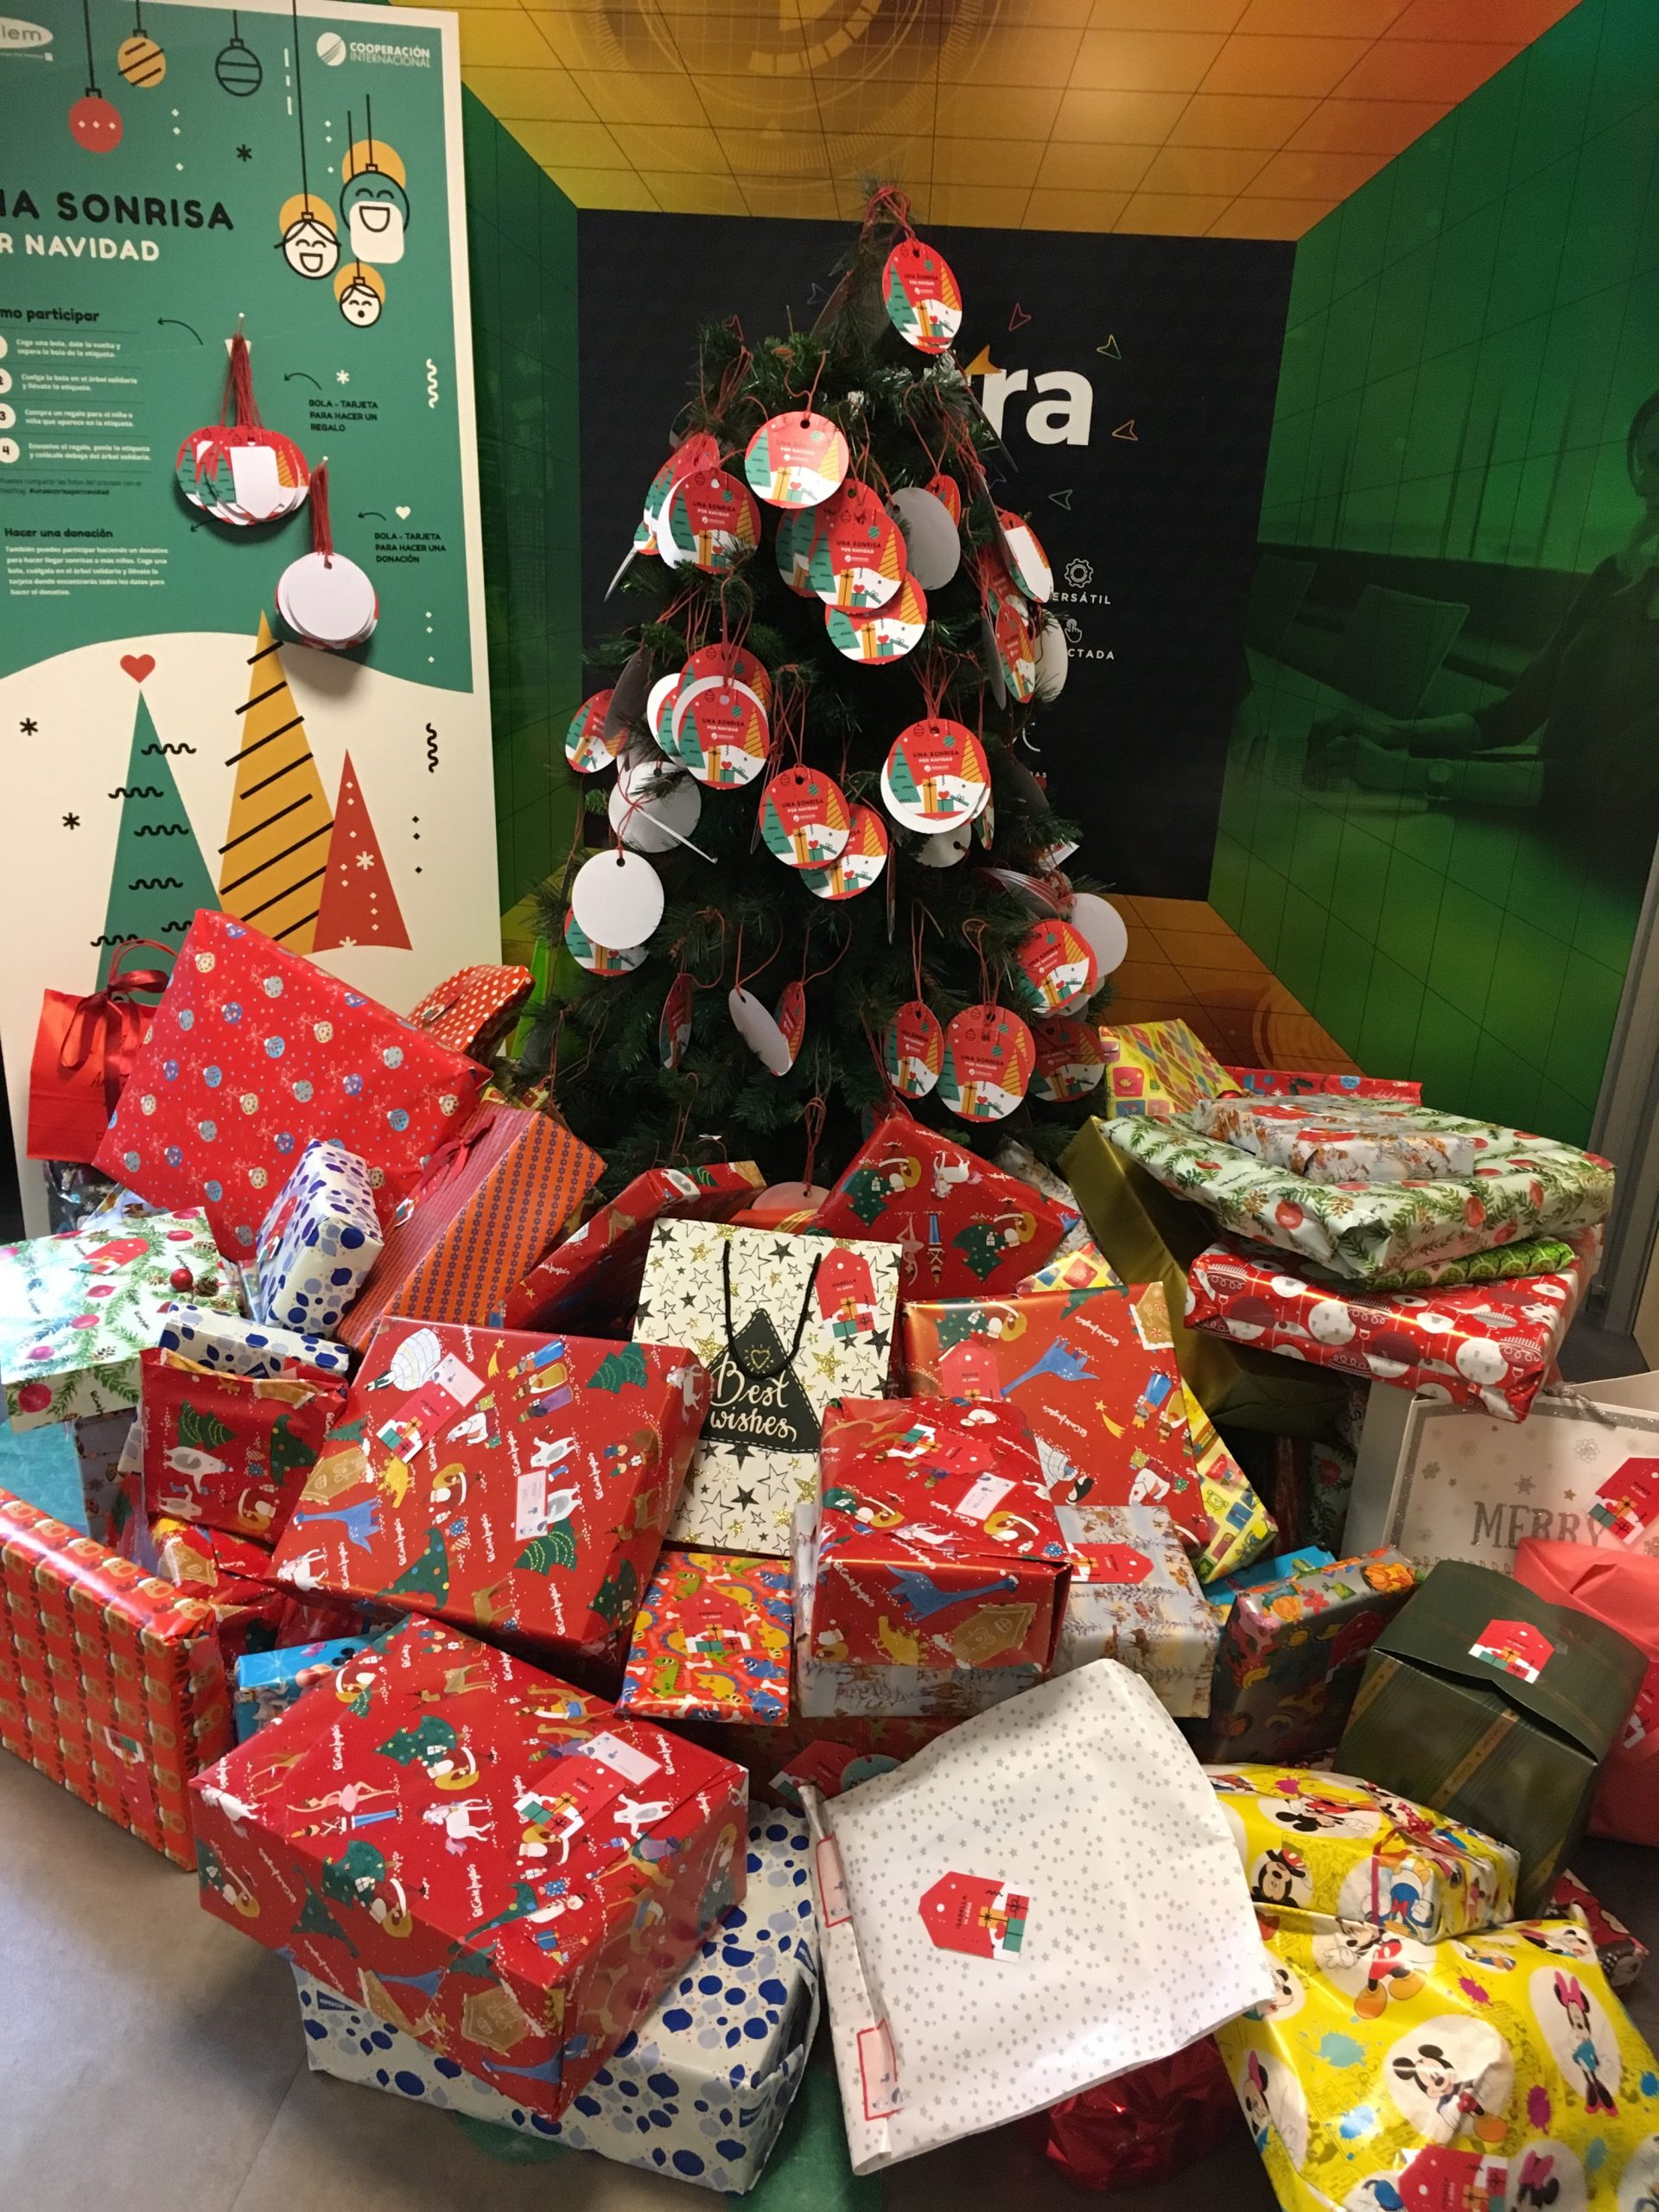 Los empleados de Cetelem reúnen centenares de regalos para sorprender con «Una Sonrisa por Navidad»